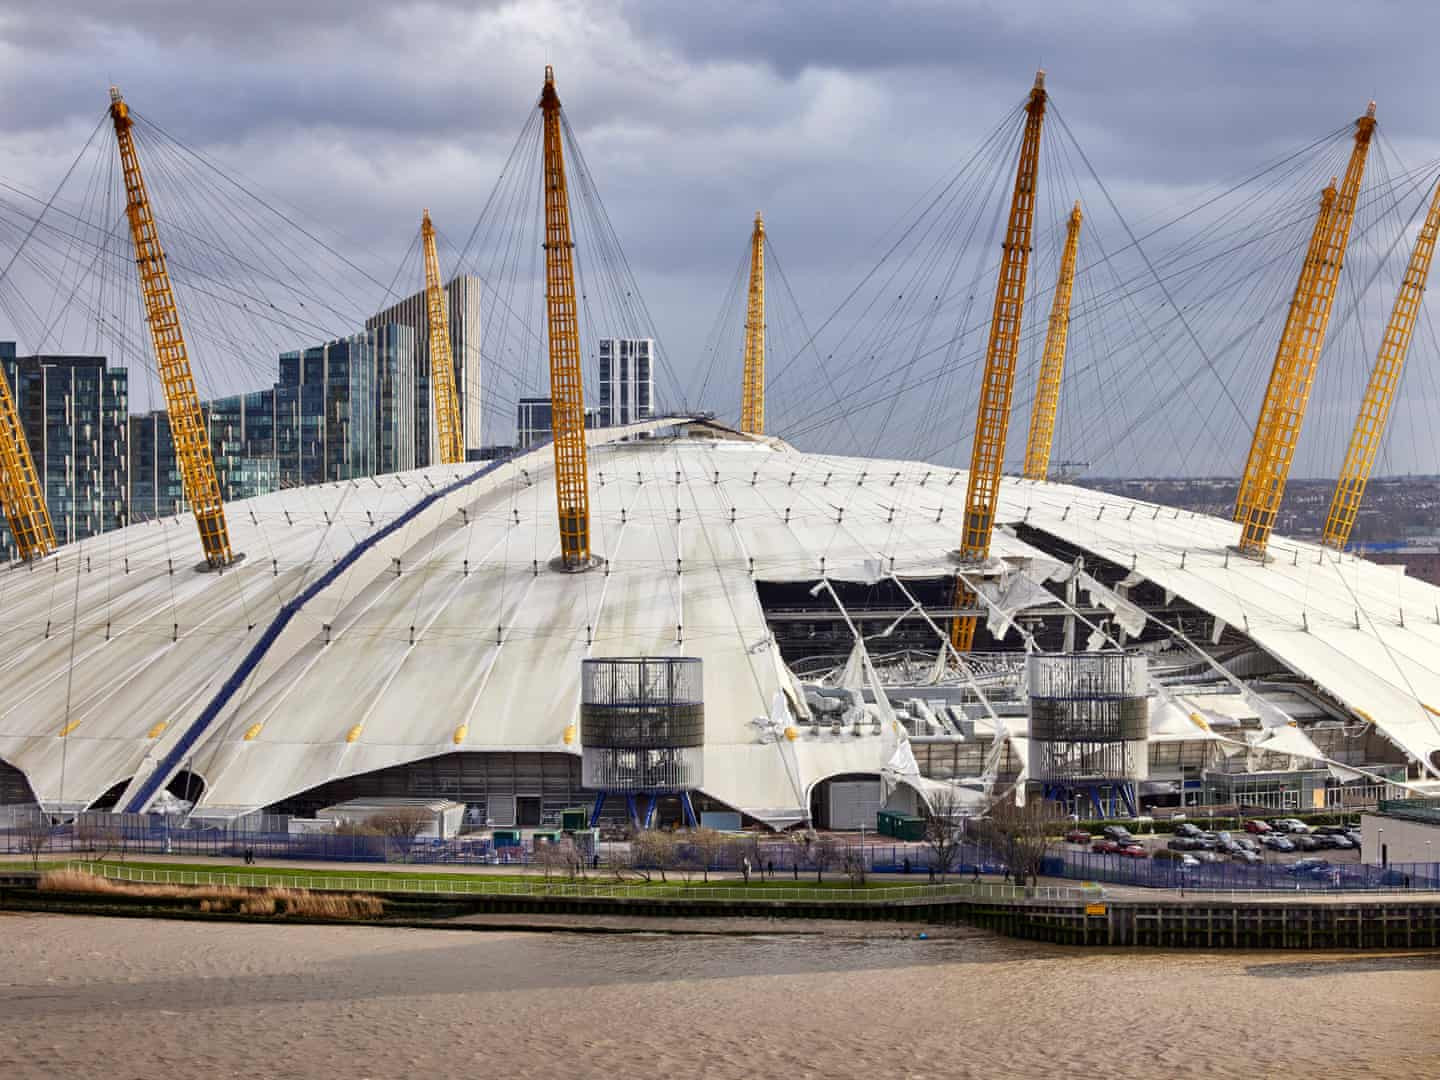 Bão làm hư hại mái của Nhà thi đấu O2, ở phía đông nam London. Ảnh: David Levene / The Guardian.